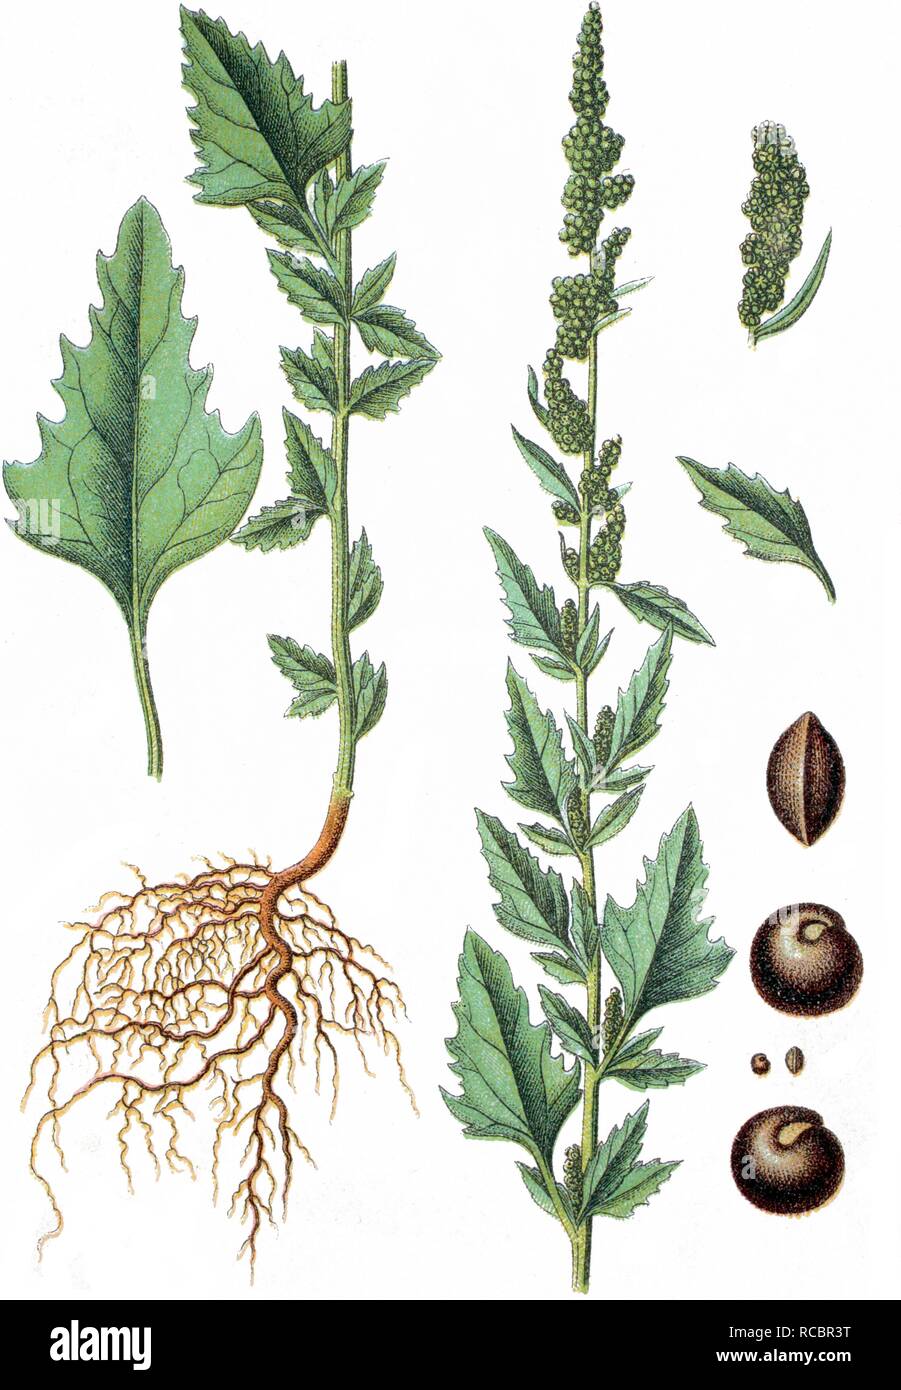 Chénopode blanc (Chenopodium agreste), plante médicinale, plante cultivée, lithography, vers 1870 Banque D'Images